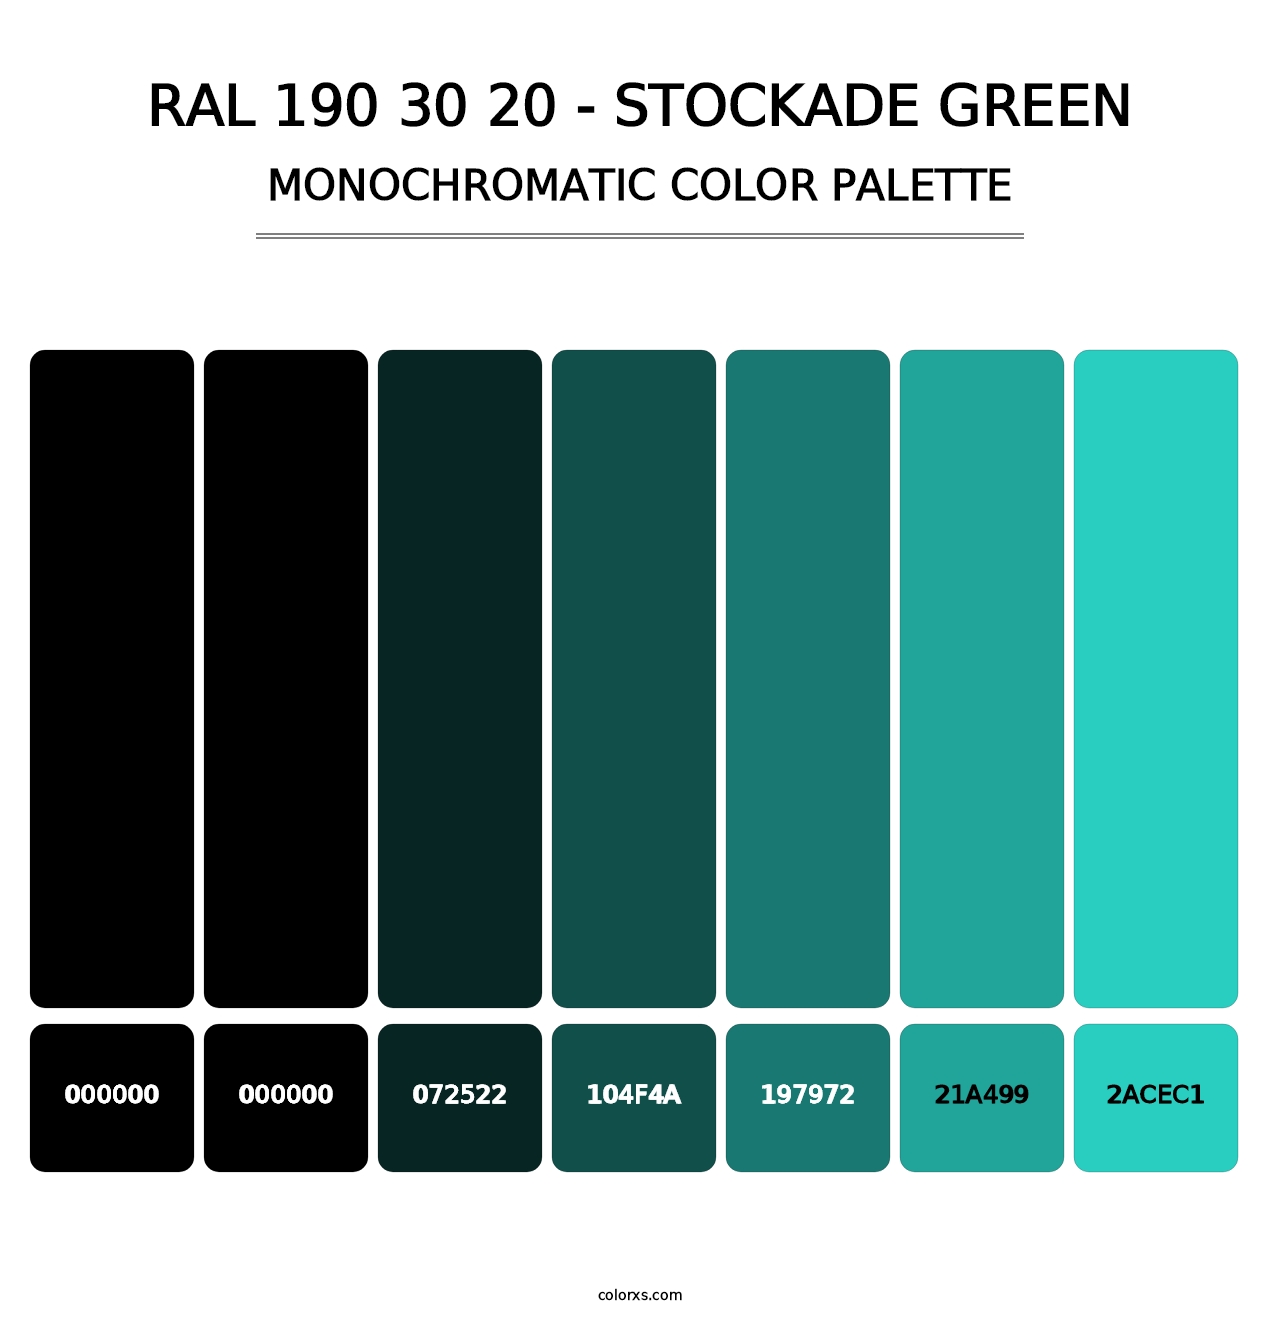 RAL 190 30 20 - Stockade Green - Monochromatic Color Palette